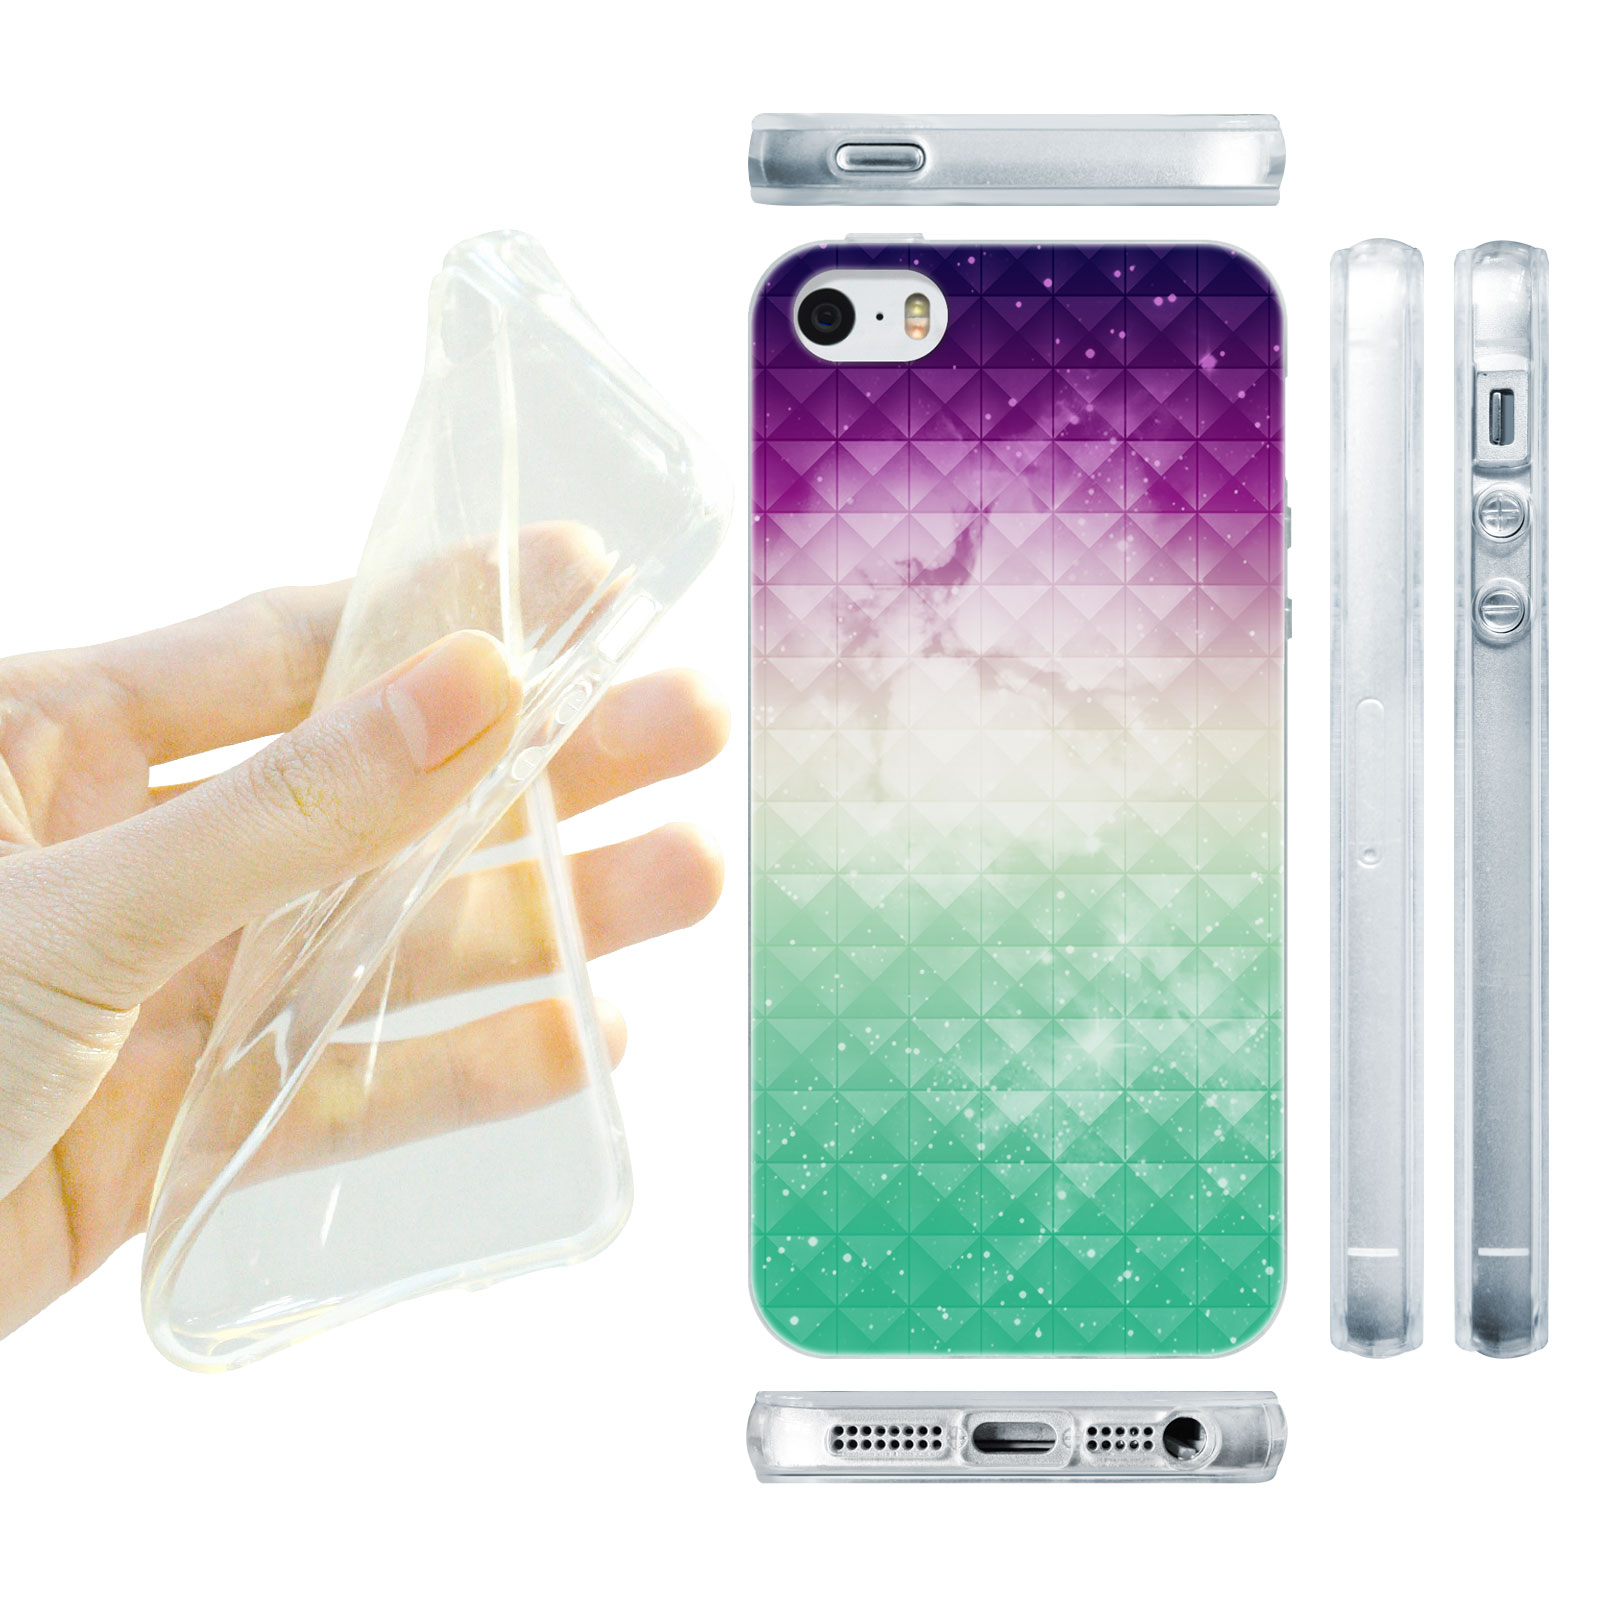 HEAD CASE silikonový obal na mobil Iphone 5/5S  vzor vesmír fialová a tyrkysová